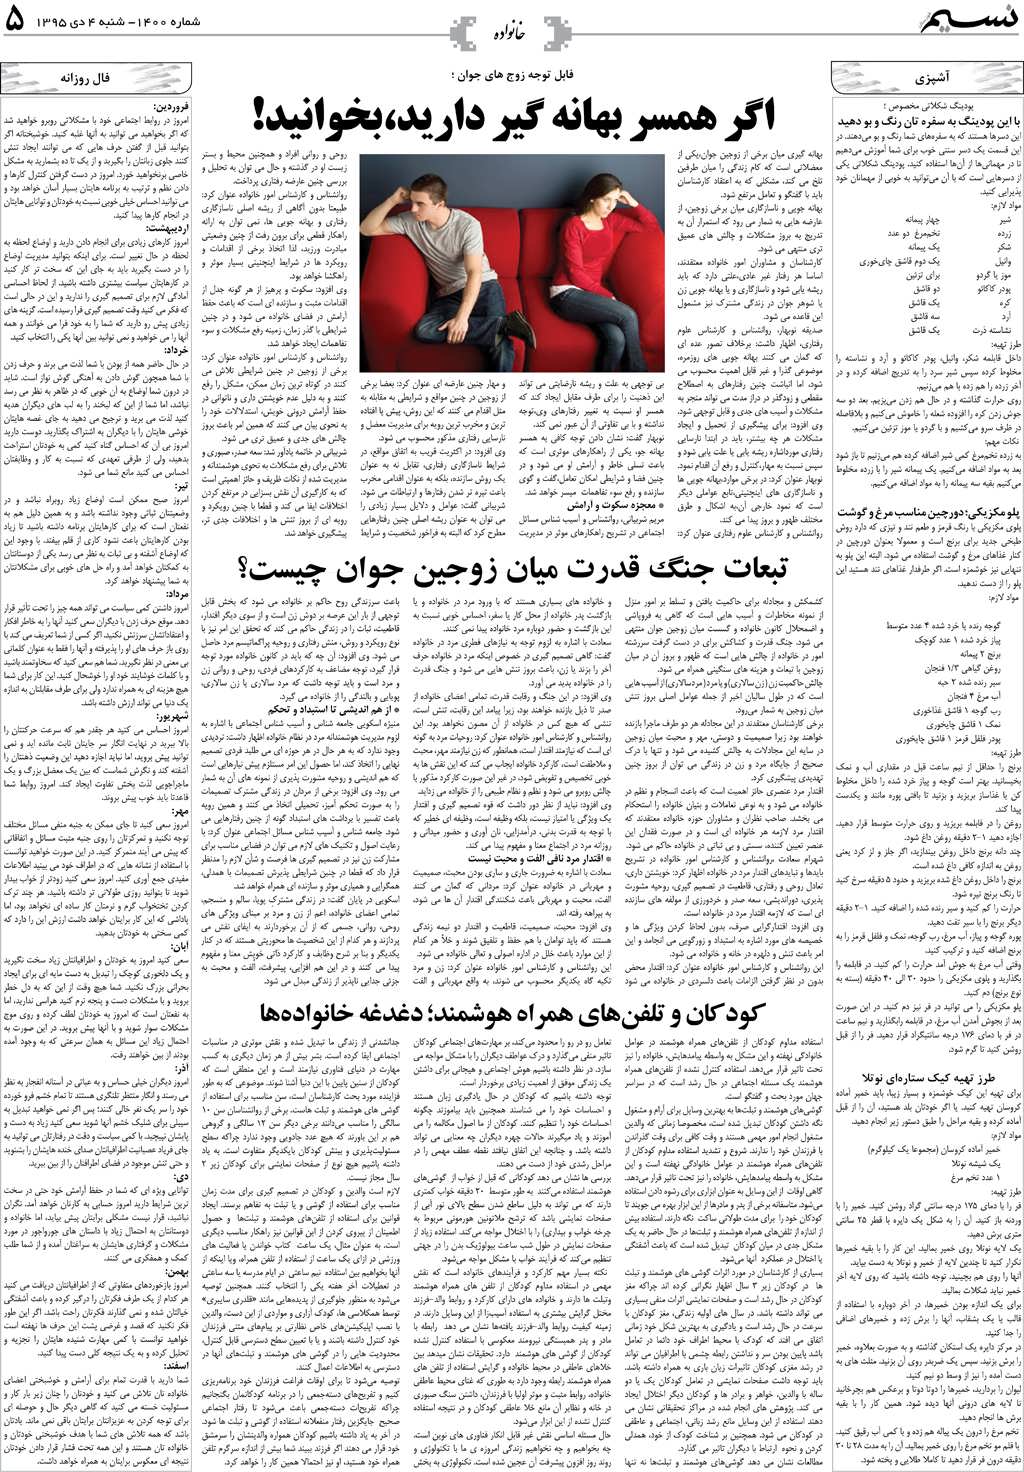 صفحه خانواده روزنامه نسیم شماره 1400